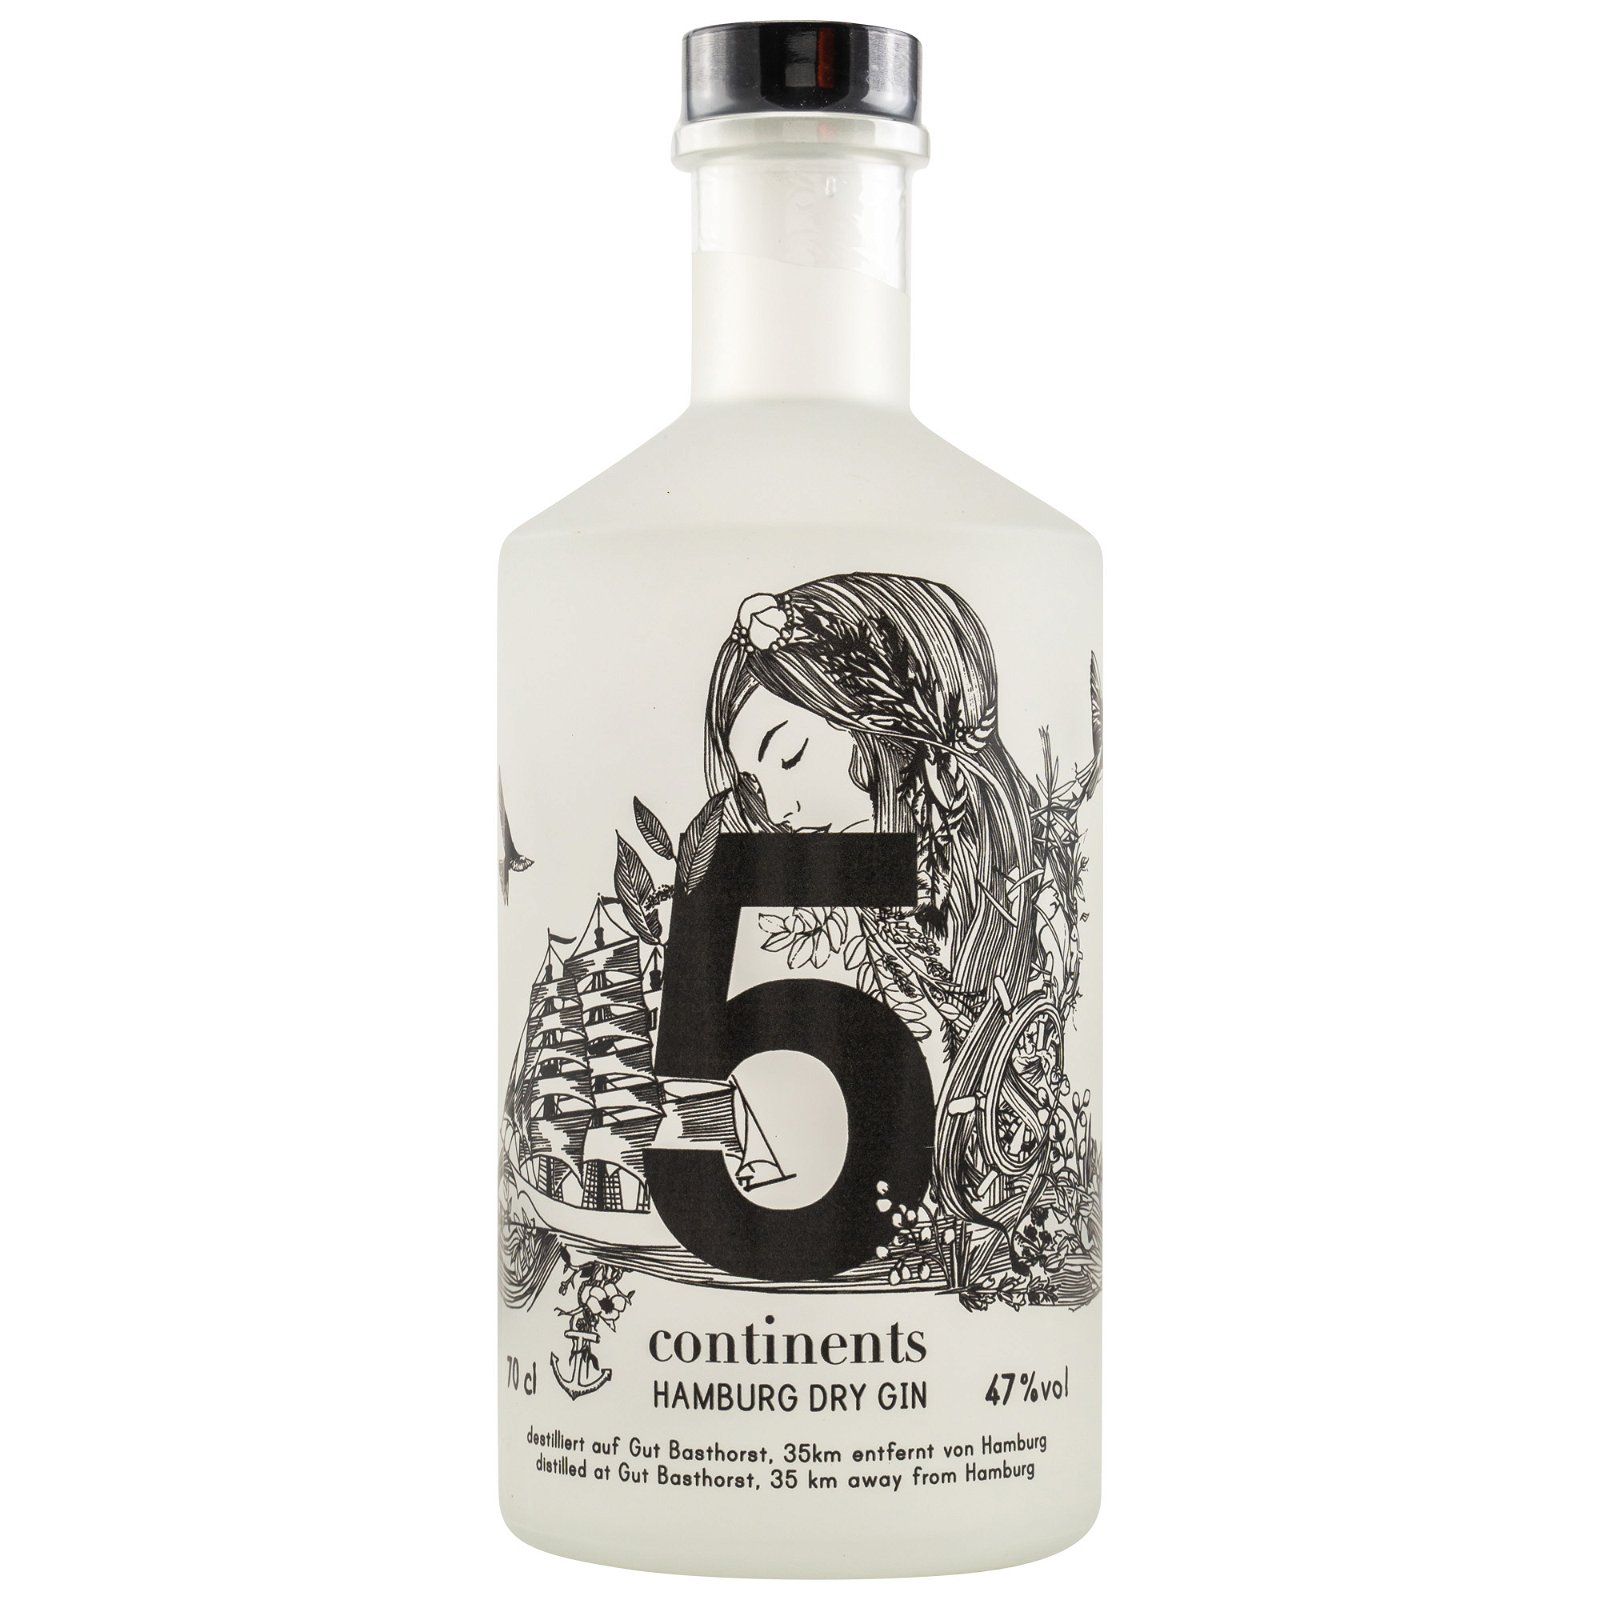 Feingeisterei 5 Continents Hamburg Dry Gin (Bio)